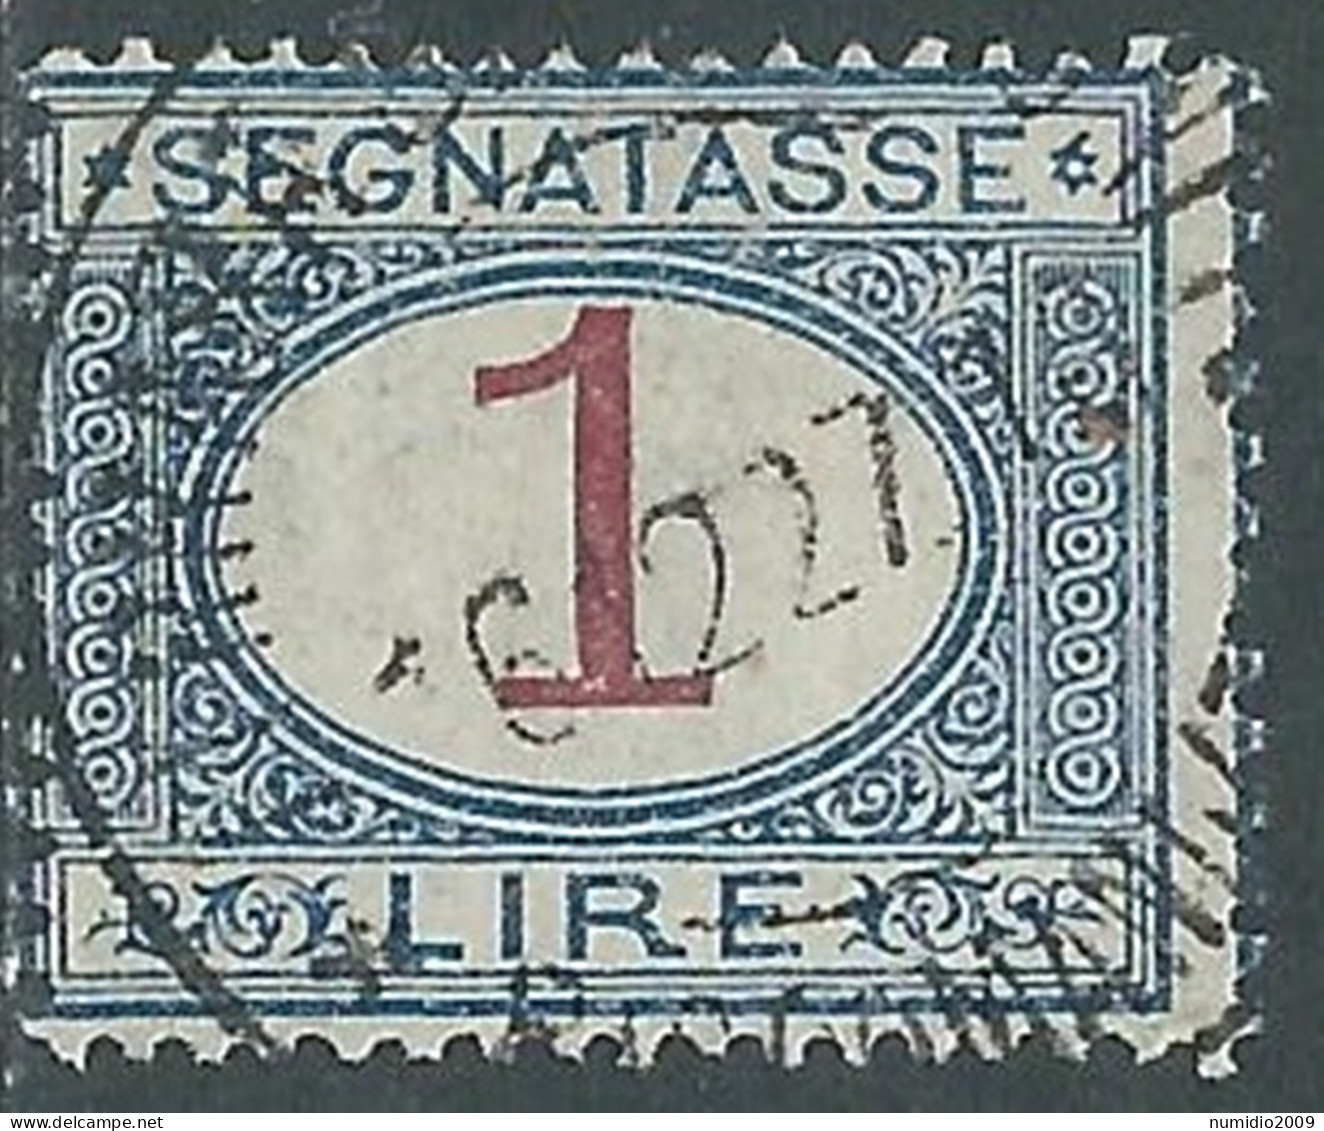 1890-94 REGNO SEGNATASSE USATO 1 LIRA - P13-4 - Segnatasse